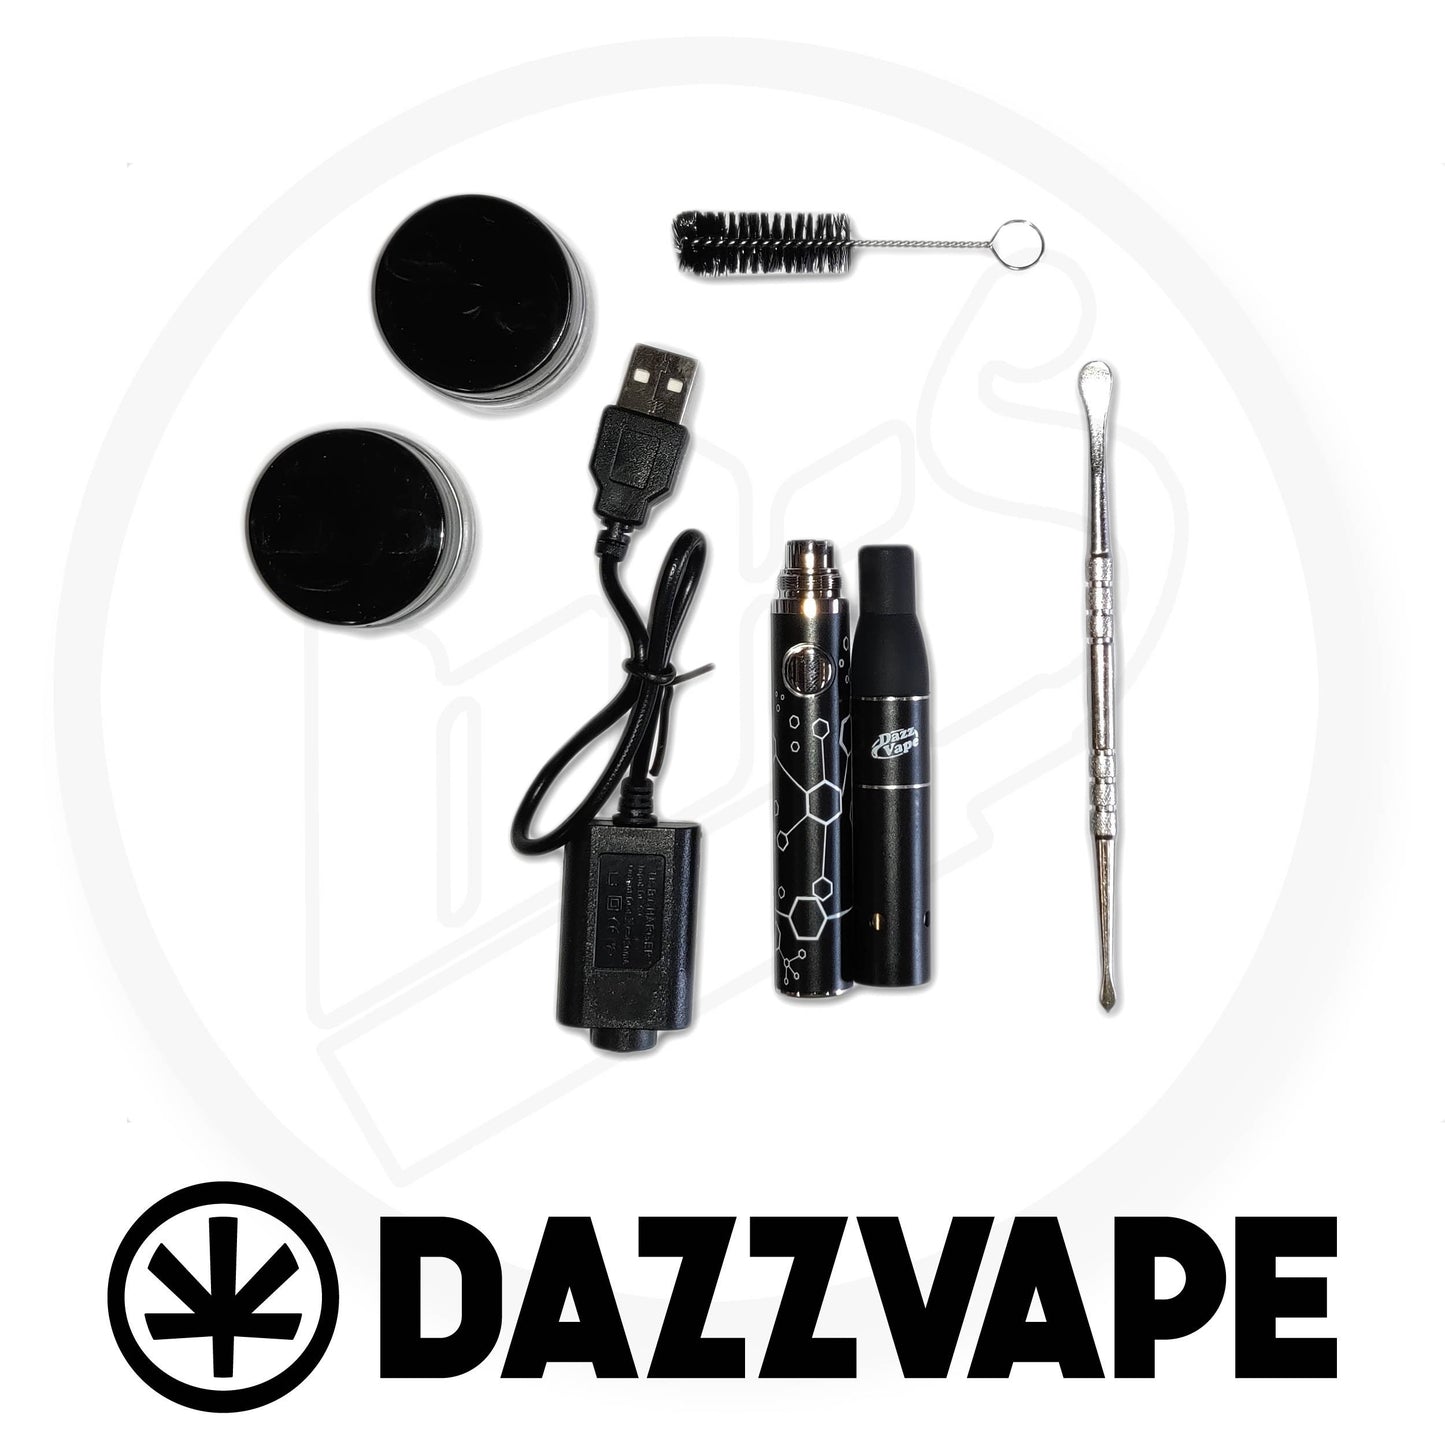 Dazzvape - Dry Herb Vaporiser Kit